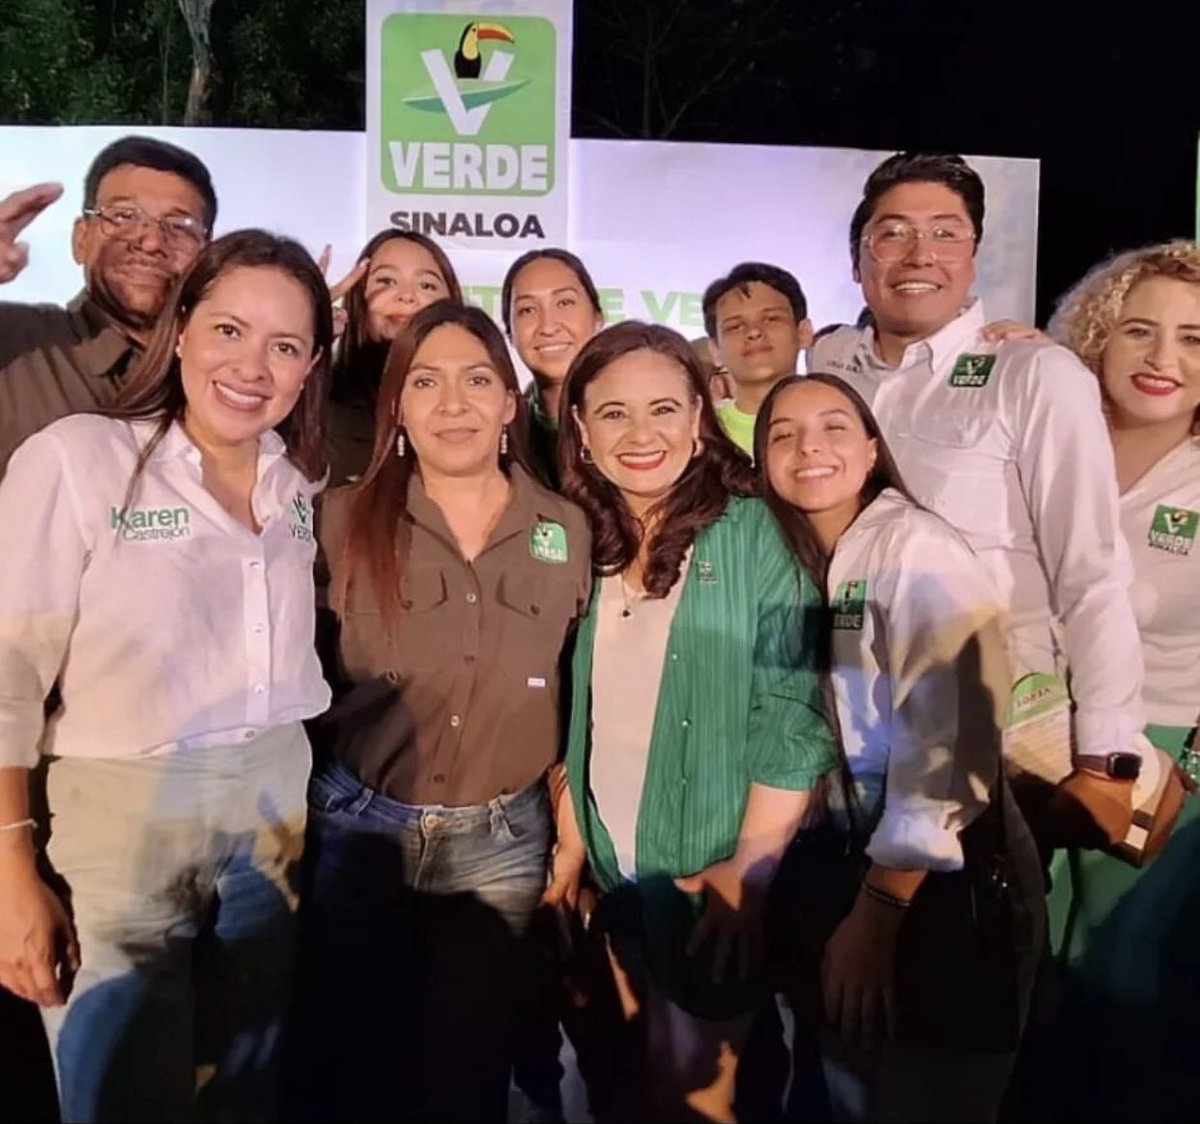 Tuvimos un gran cierre de campaña en #Sinaloa junto a @ppaispuro, estamos listos para que el #PlanC se materialice este #2dejunio con @ChuyValdesP y @NubiaRamosCar en el senado, #5de5 con nuestros candidatos, juntos trabajaremos por el #México sustentable que soñamos.
#VotaVerde